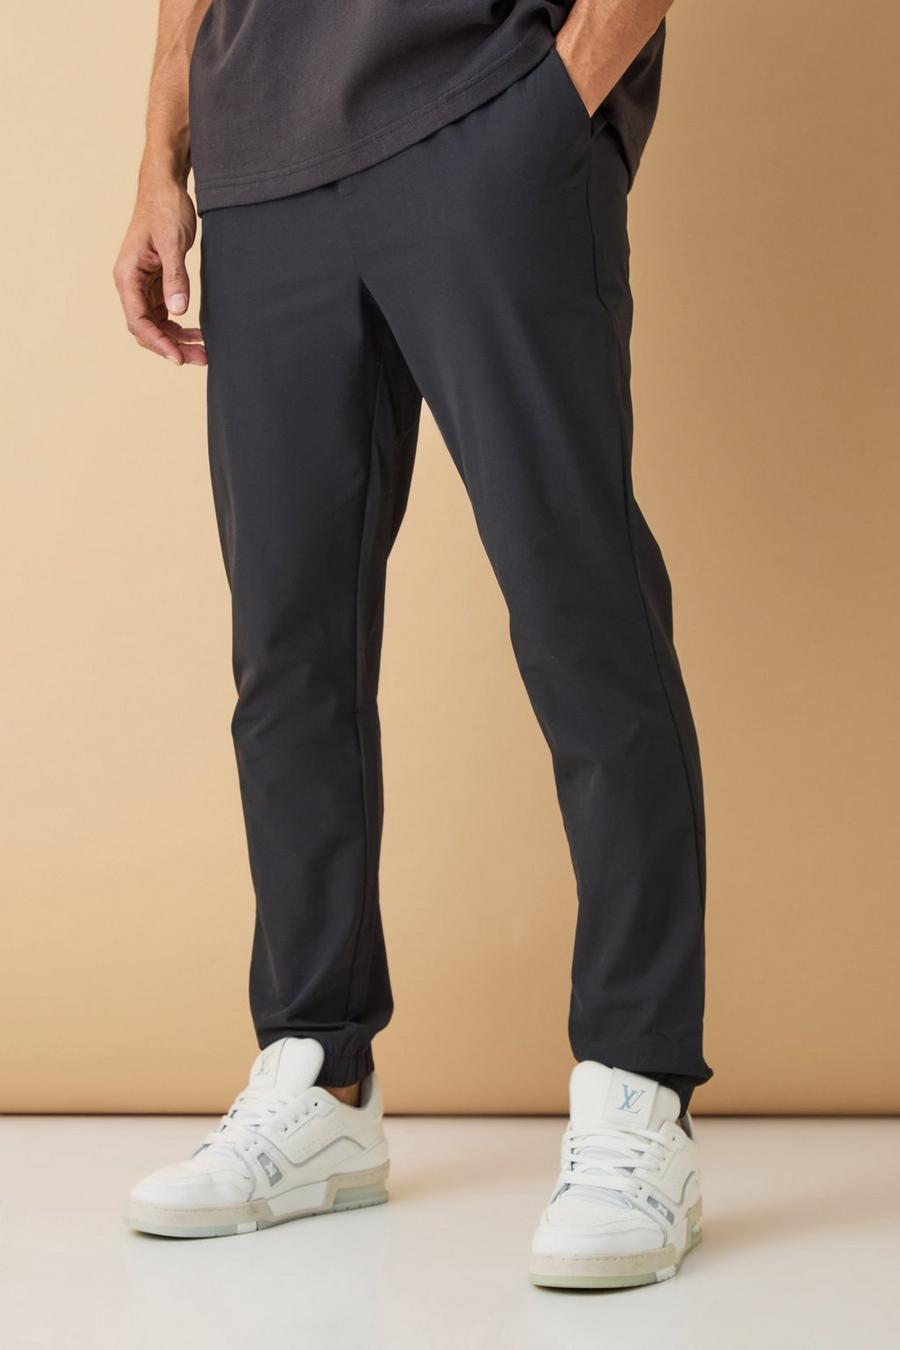 Pantalón deportivo entallado elástico ajustado, Black image number 1